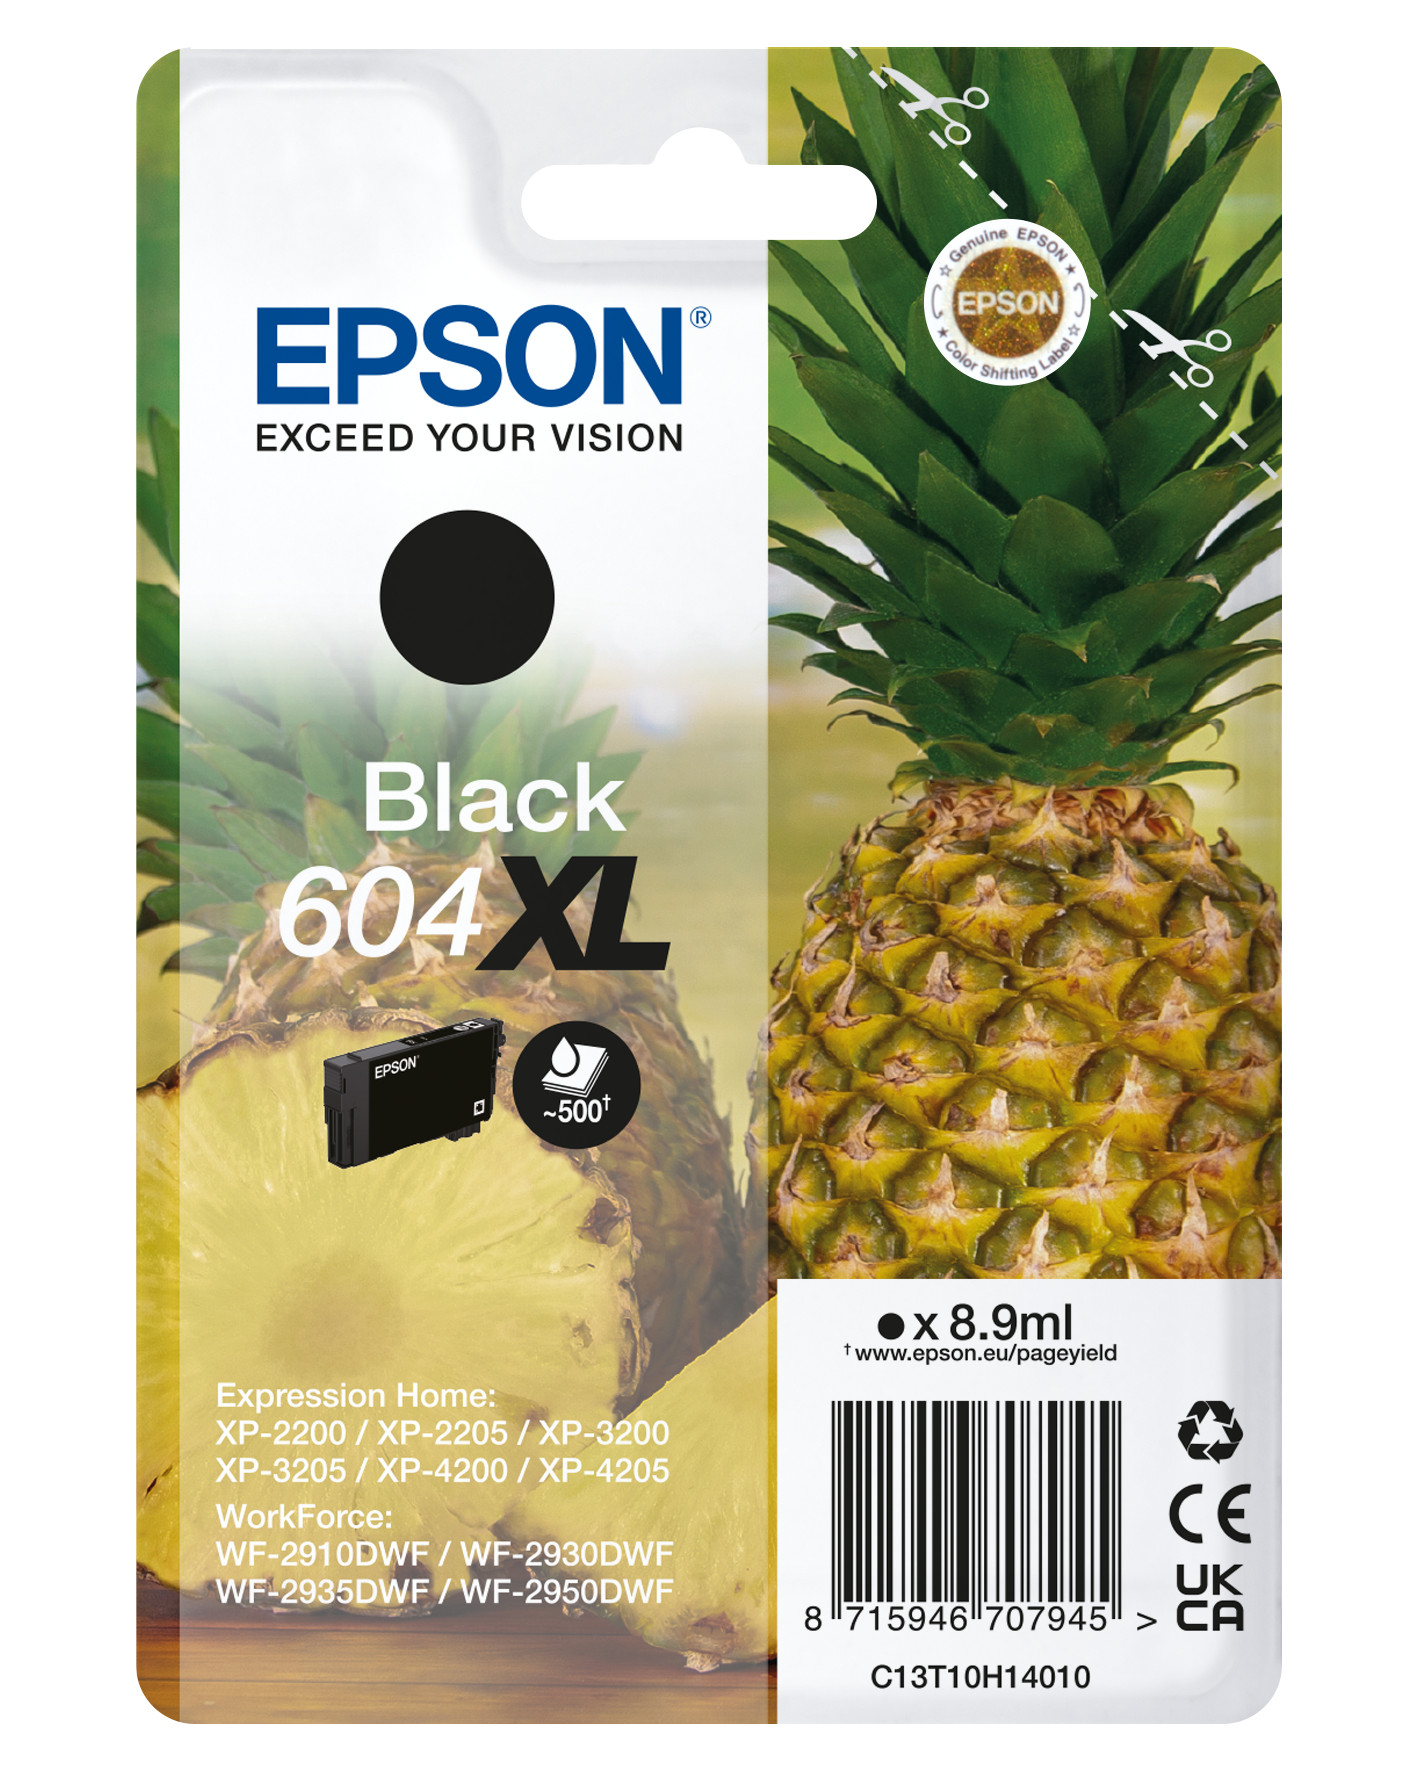 Stampante Epson Expression Home XP-2200 compatta con WiFi + 2 KIT 4 604XL +  2 Risme di Carta A4 Golden Star